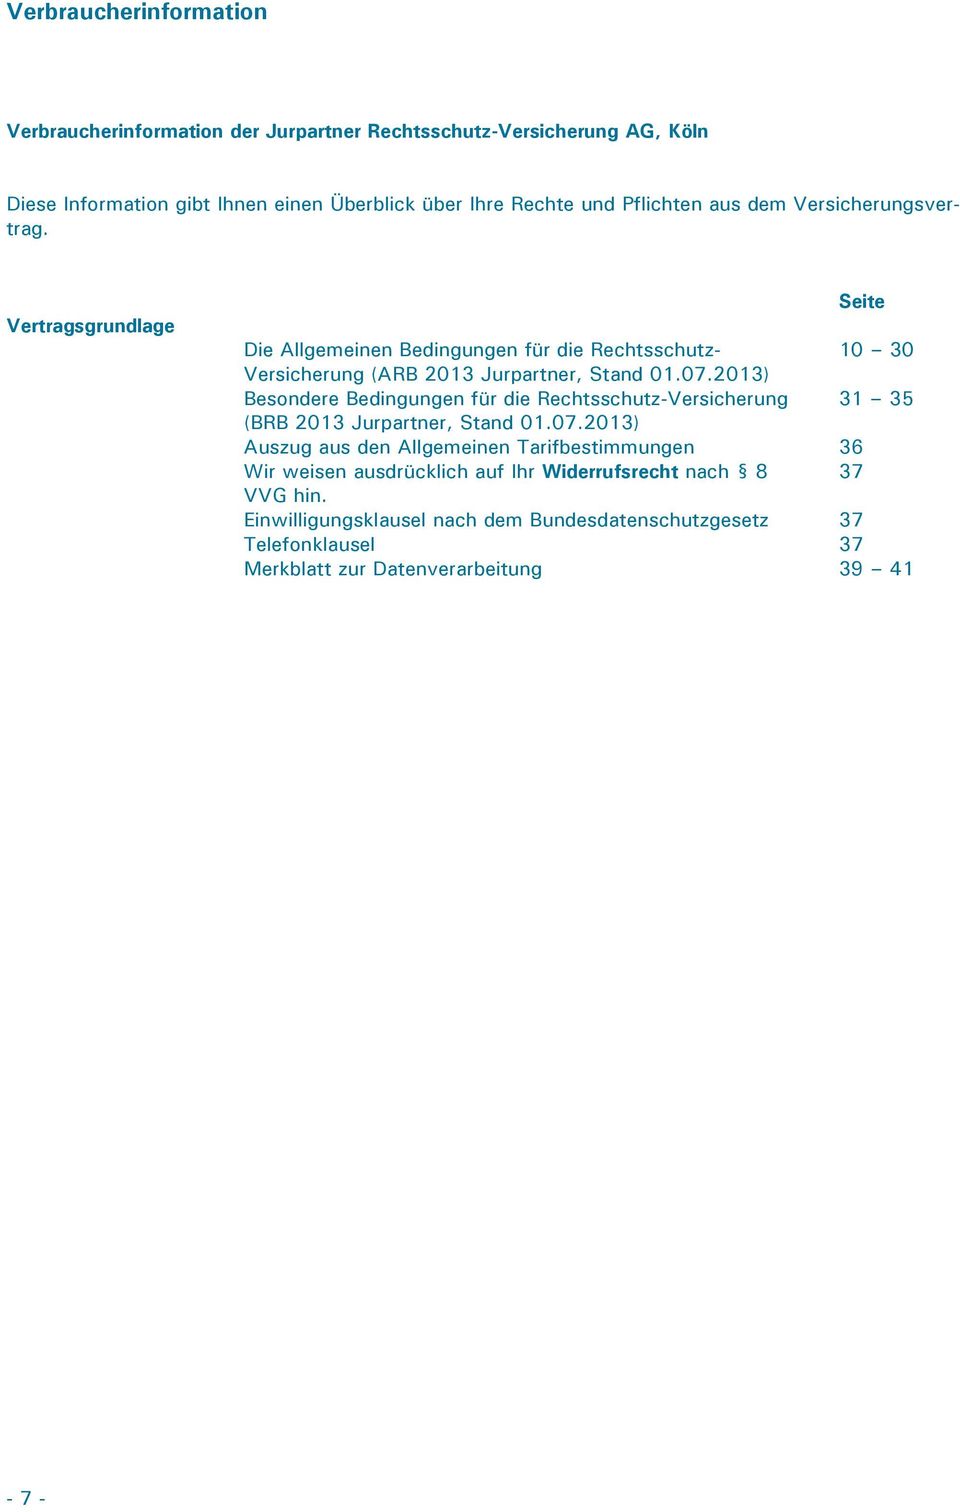 2013) Besondere Bedingungen für die Rechtsschutz-Versicherung 31 35 (BRB 2013 Jurpartner, Stand 01.07.